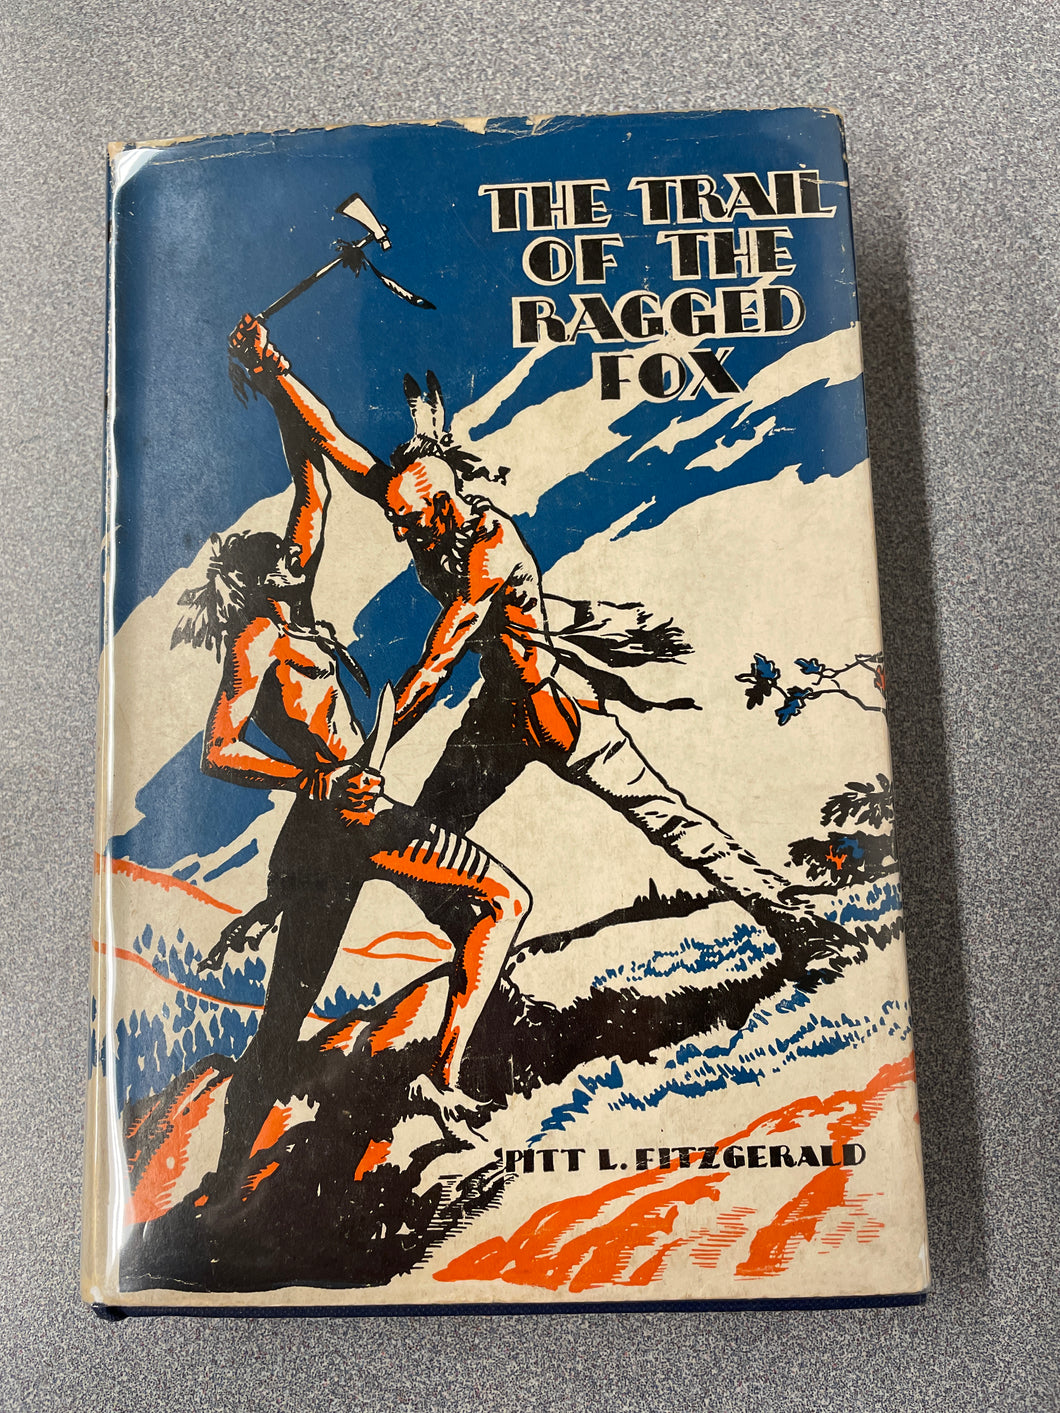 Fitzgerald, Pitt L., The Trail of the Ragged Fox [1939] CC 11/23